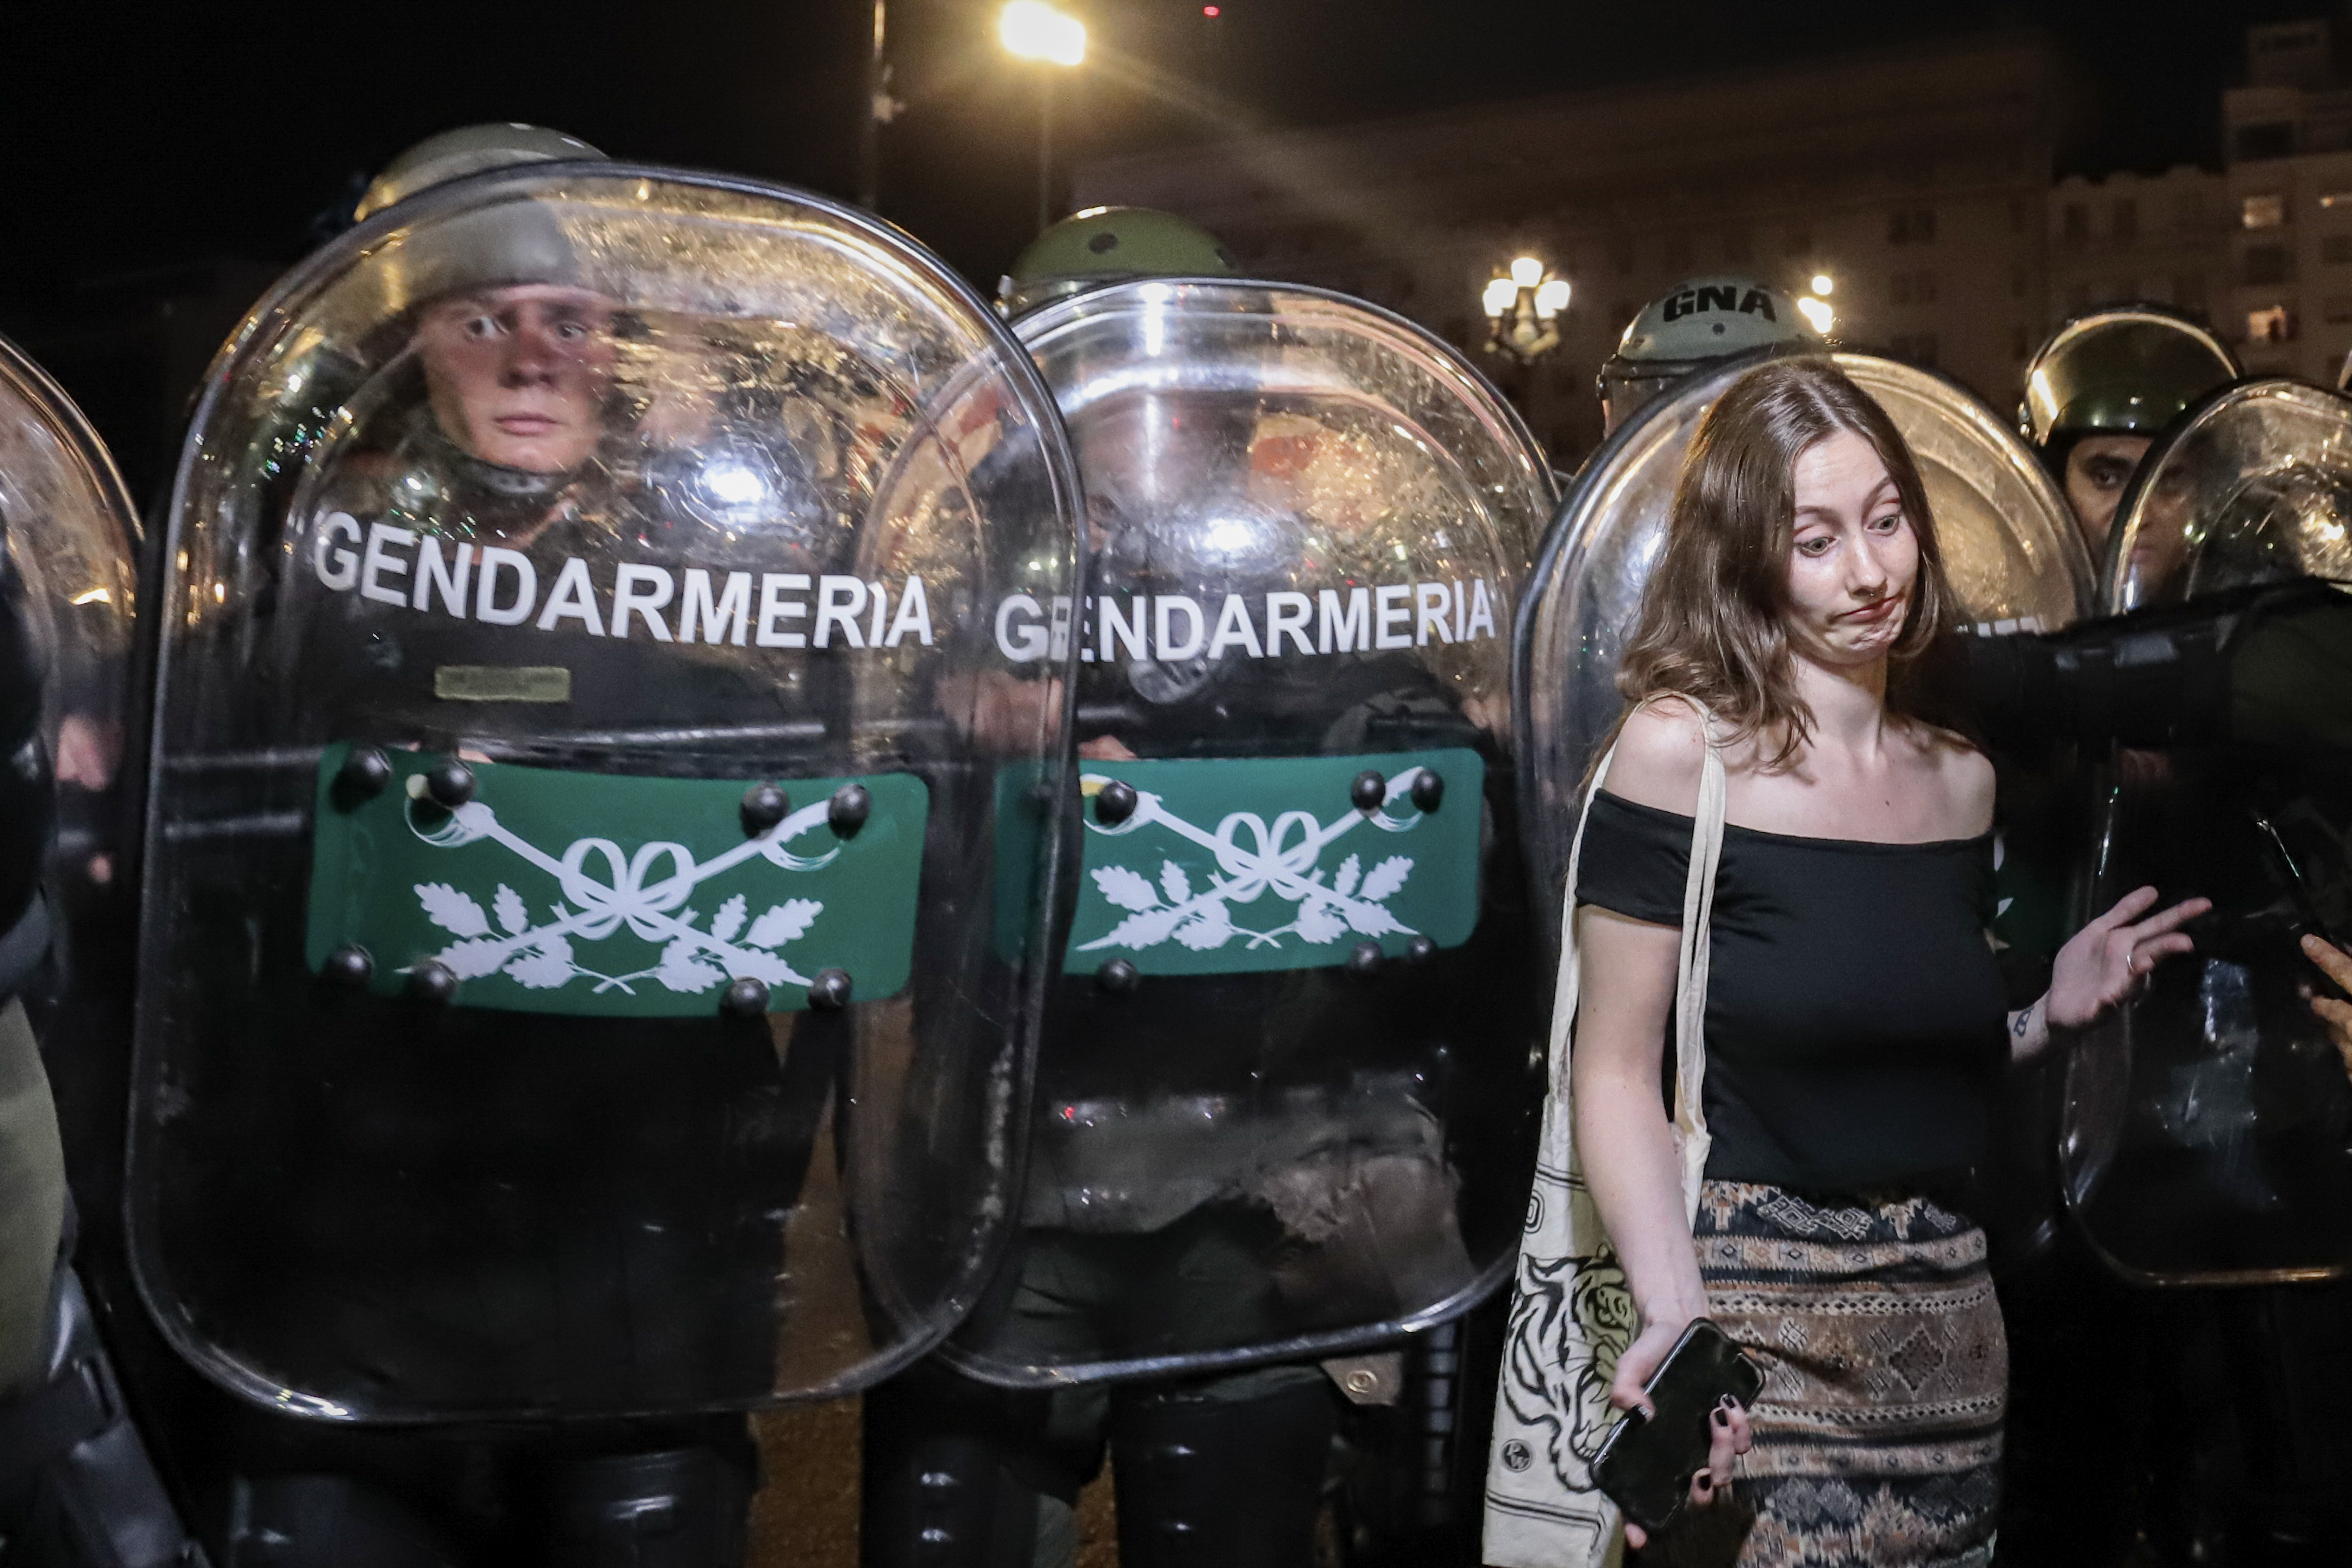 Arjantin'de 'Torba Yasa' görüşmelerine karşı protesto!